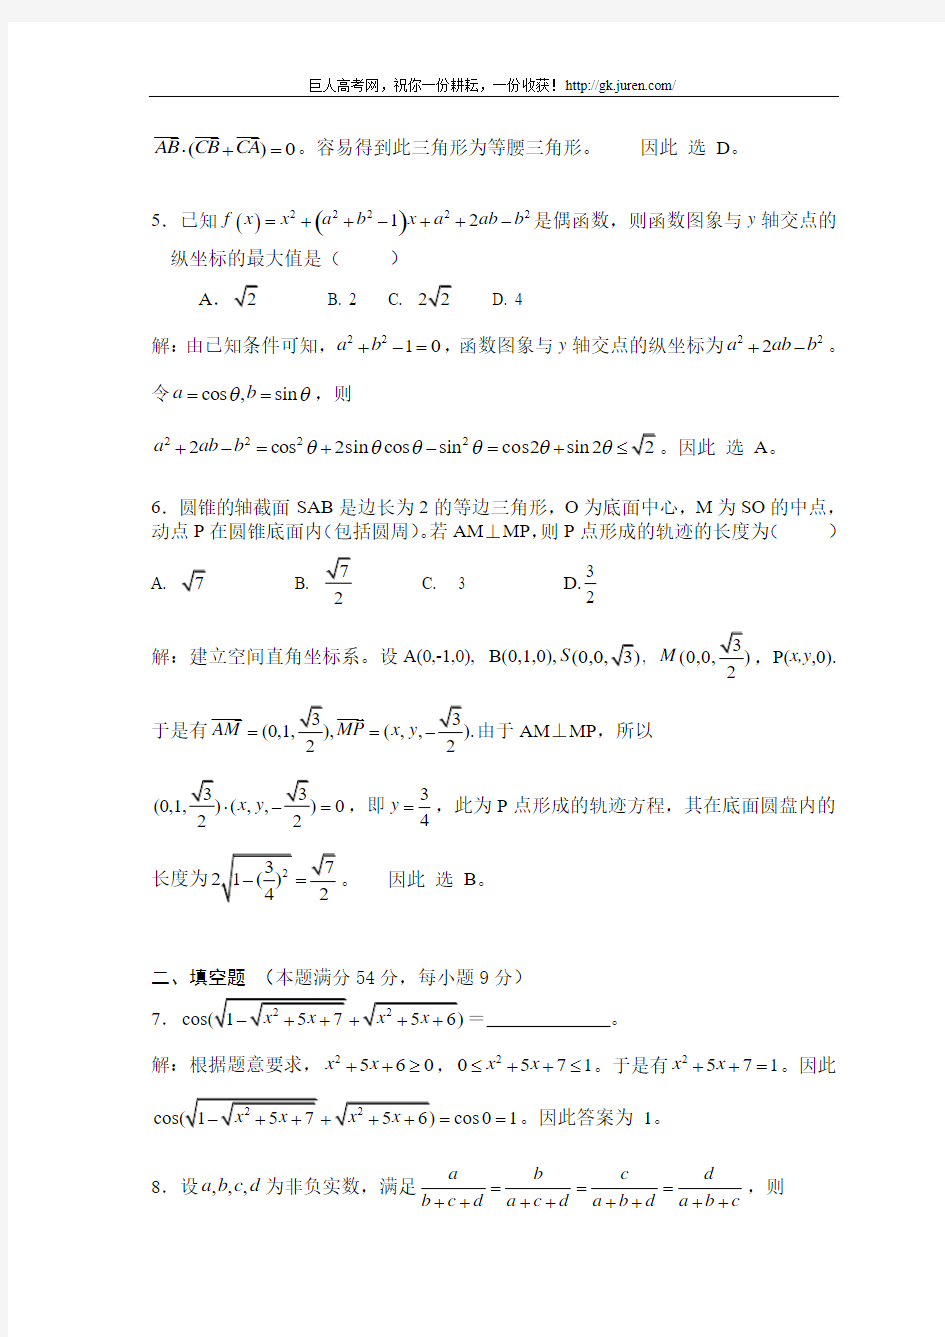 2008年浙江省数学竞赛试题及参考答案